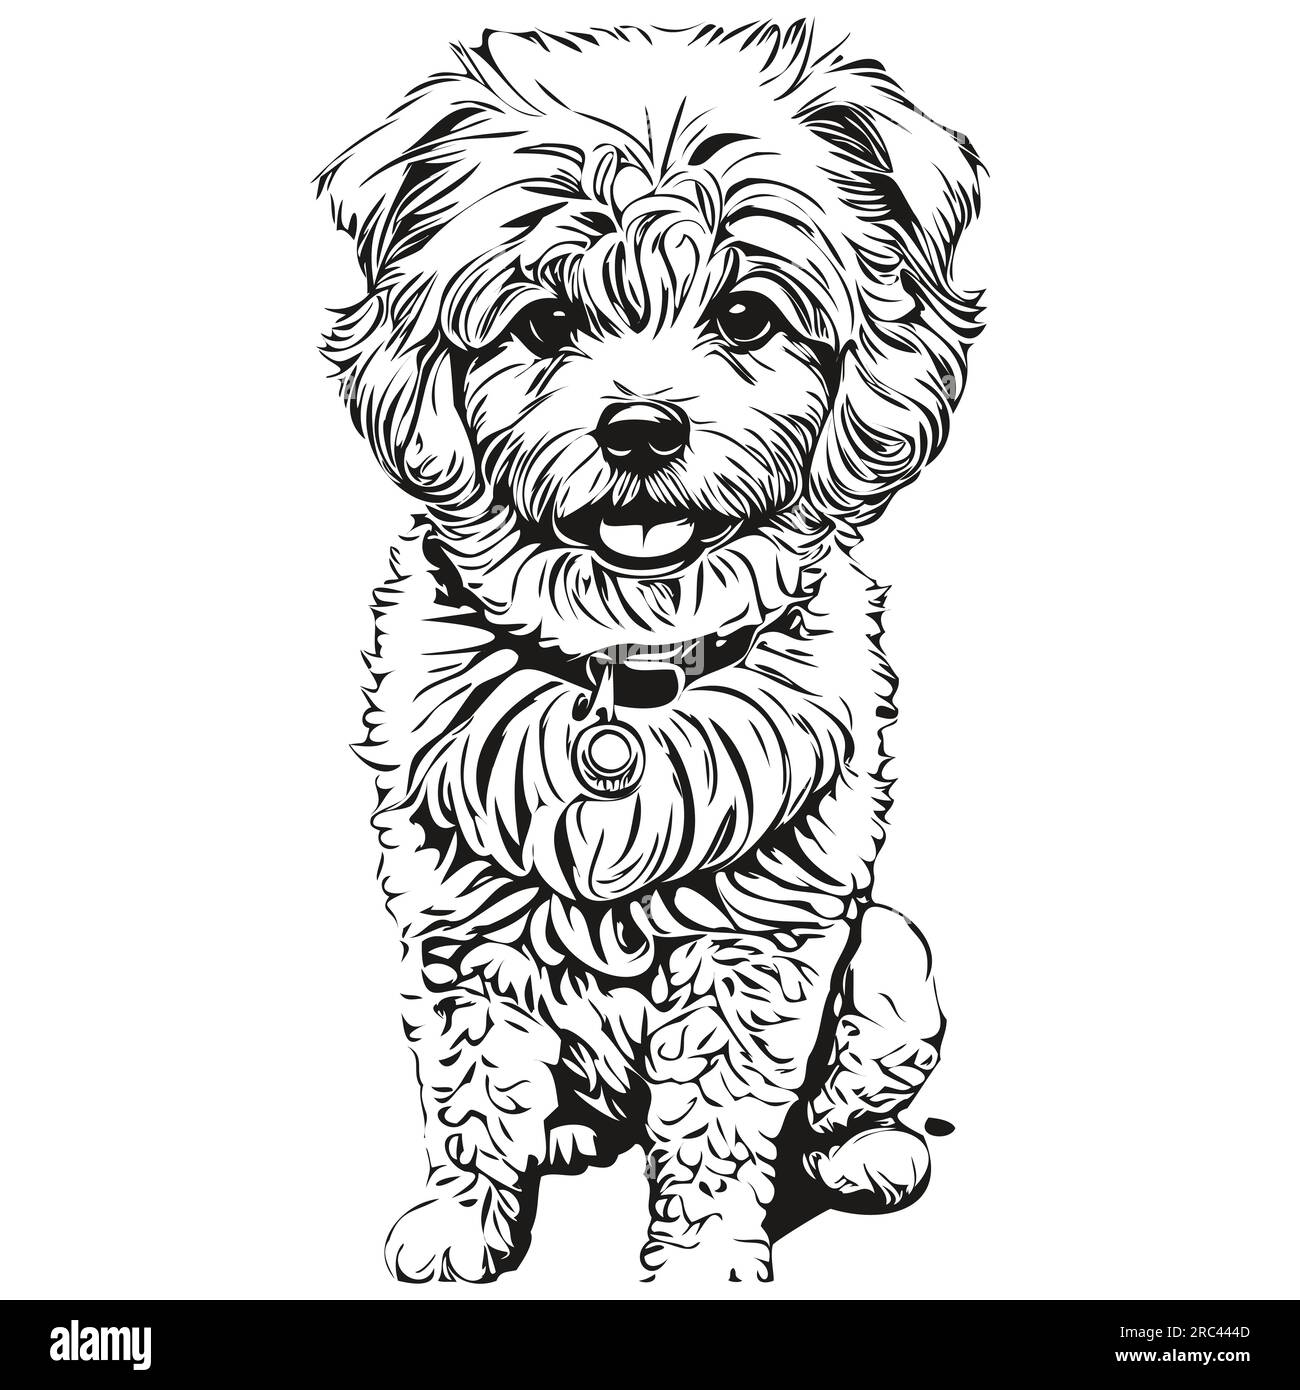 Bichons frise chien dessin au trait, clip art animal dessin à la main vecteur noir et blanc animal de compagnie réaliste de race Illustration de Vecteur